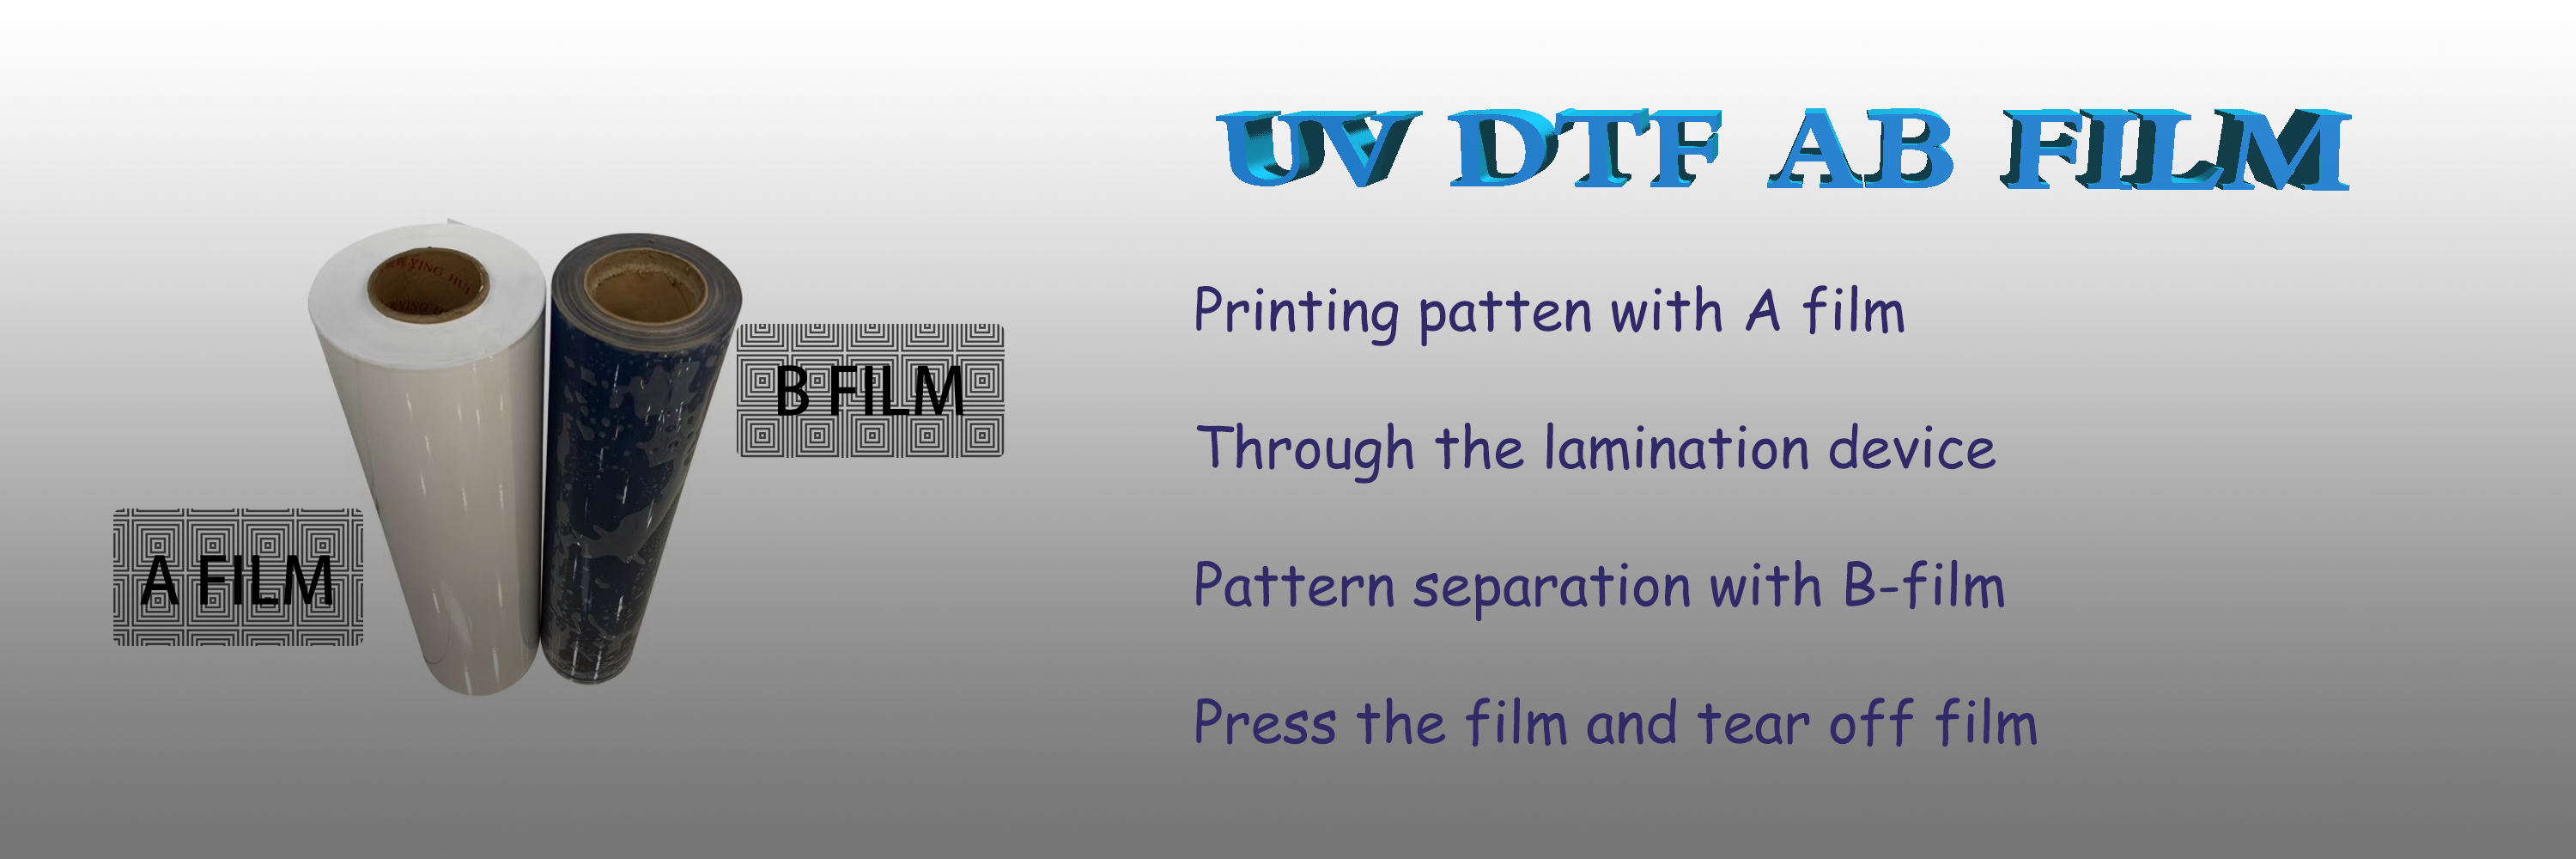 UV-DTF-AB-FILM